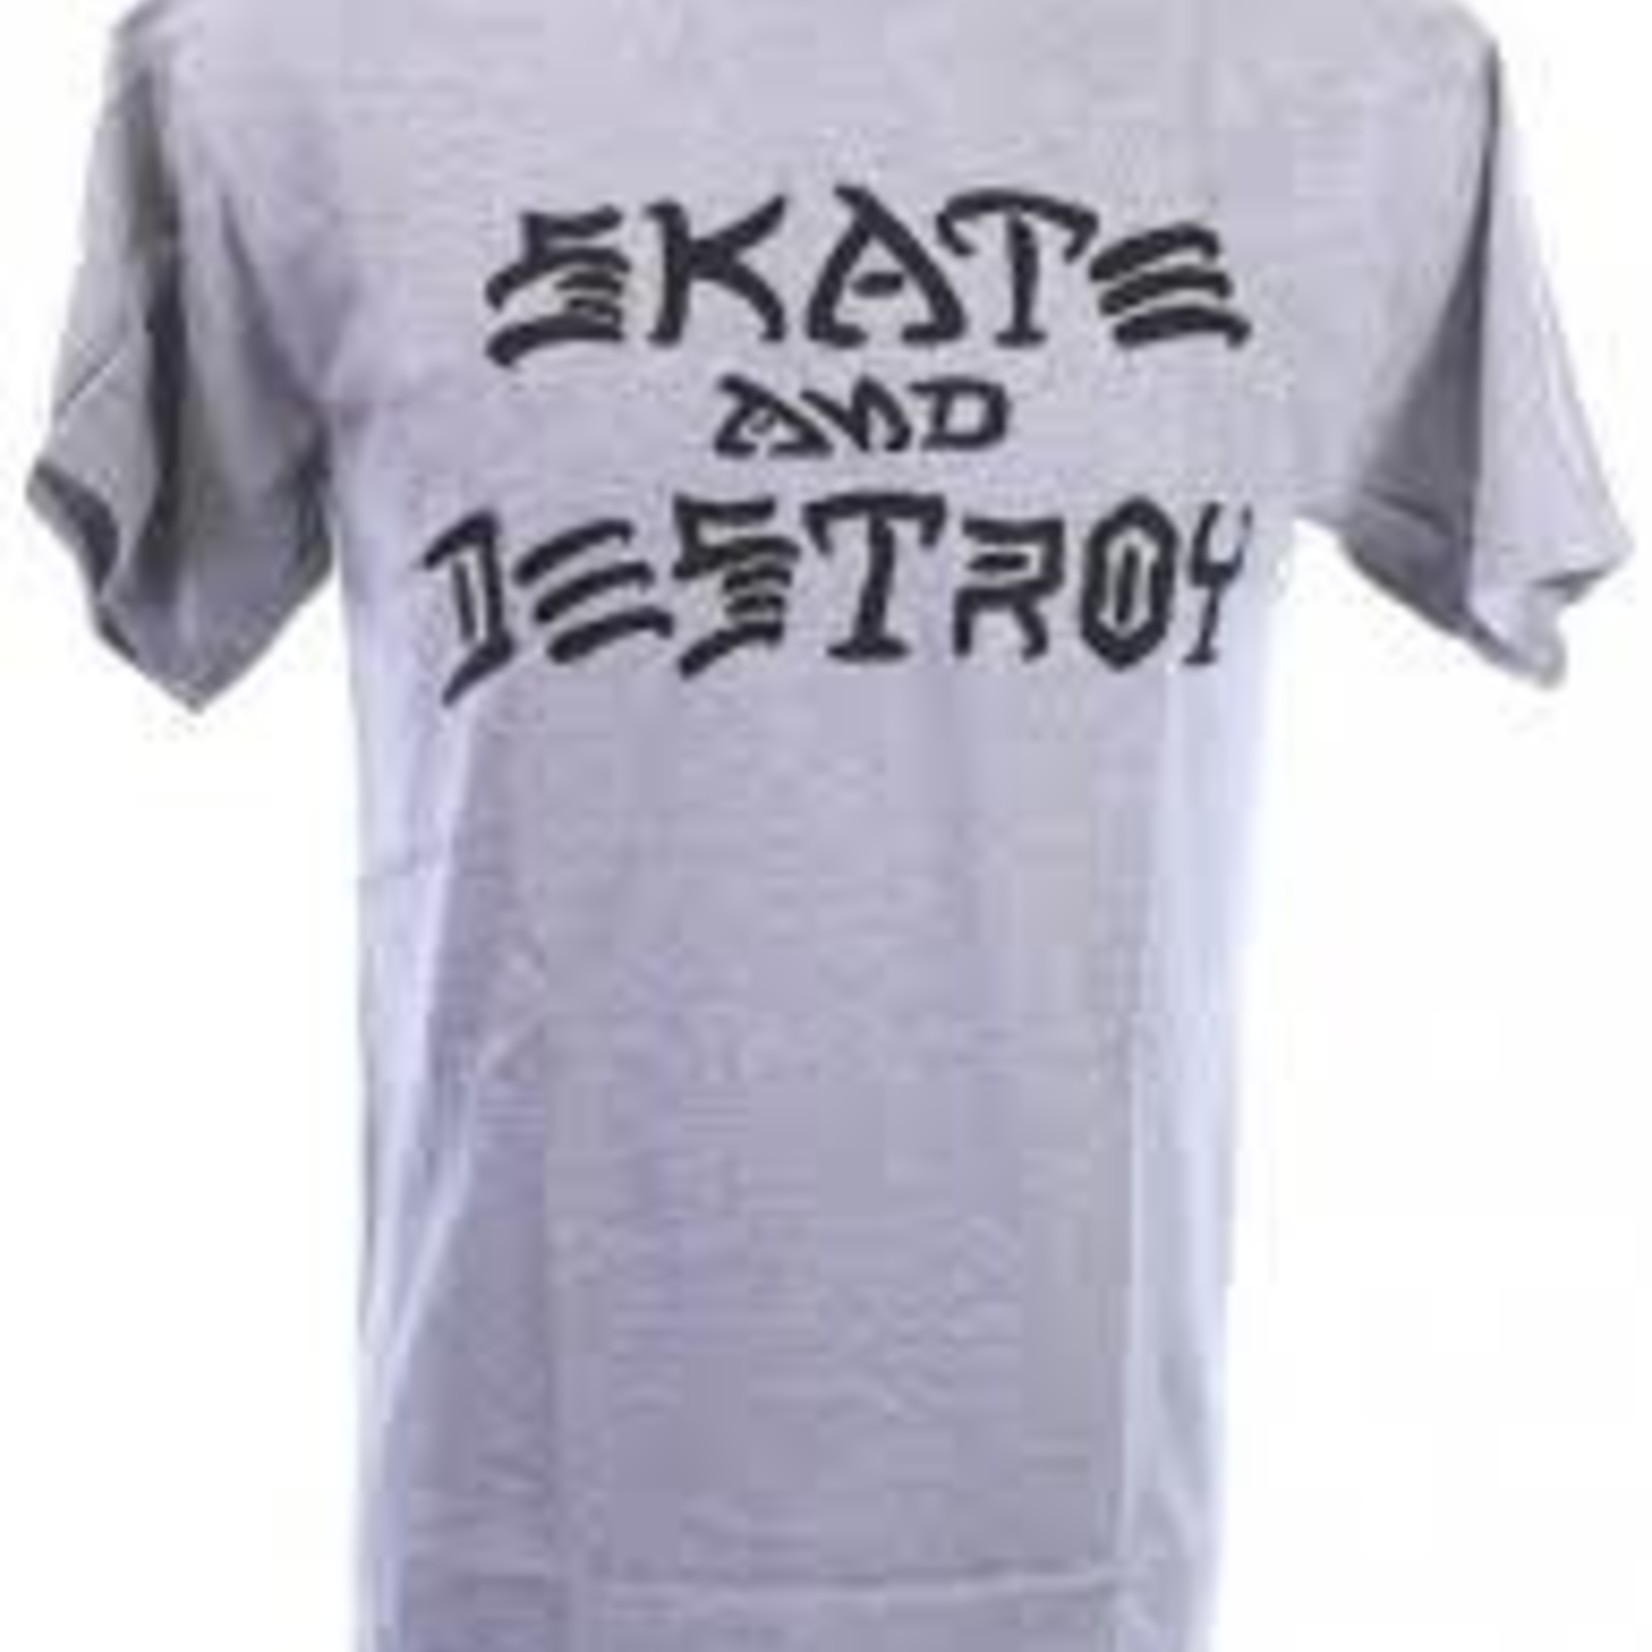 Thrasher Thrasher Skate and Destroy T-Shirt - Grey -